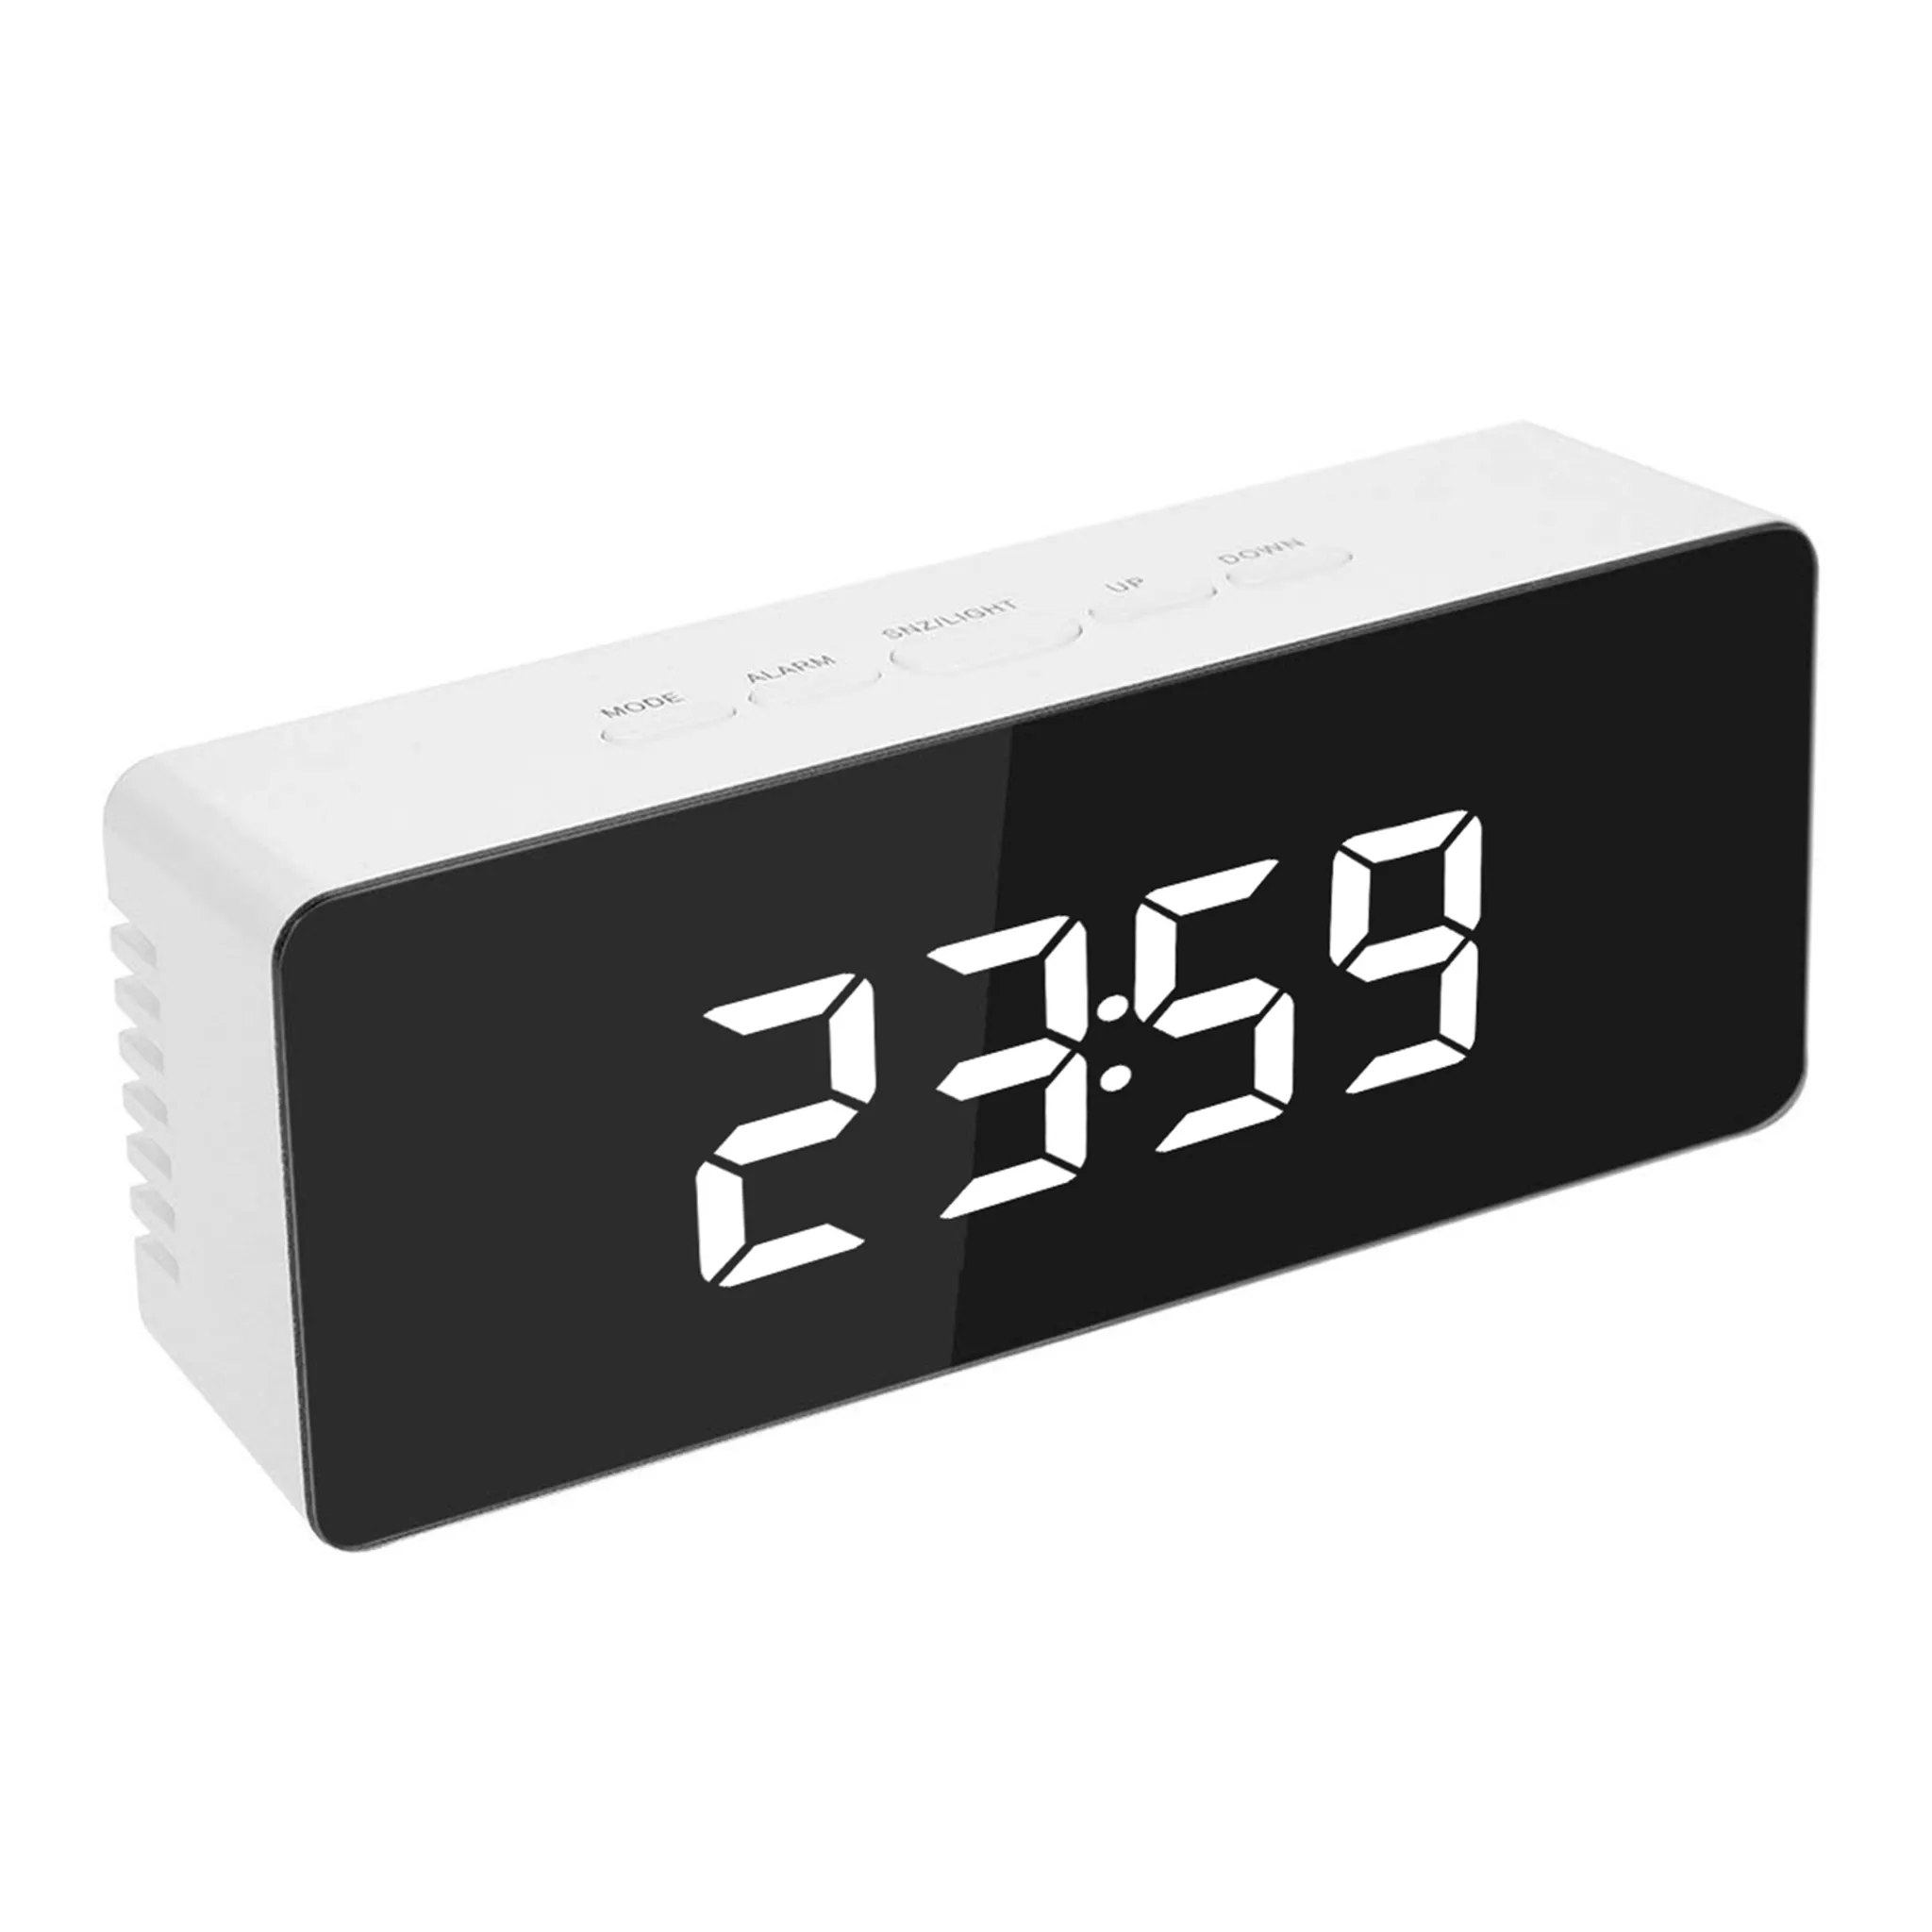 Tisch Uhr Temperatur Kalender Display Korea Tisch Uhr Student Schreibtisch  Uhr Weiß Alarm Uhr Nacht Smart